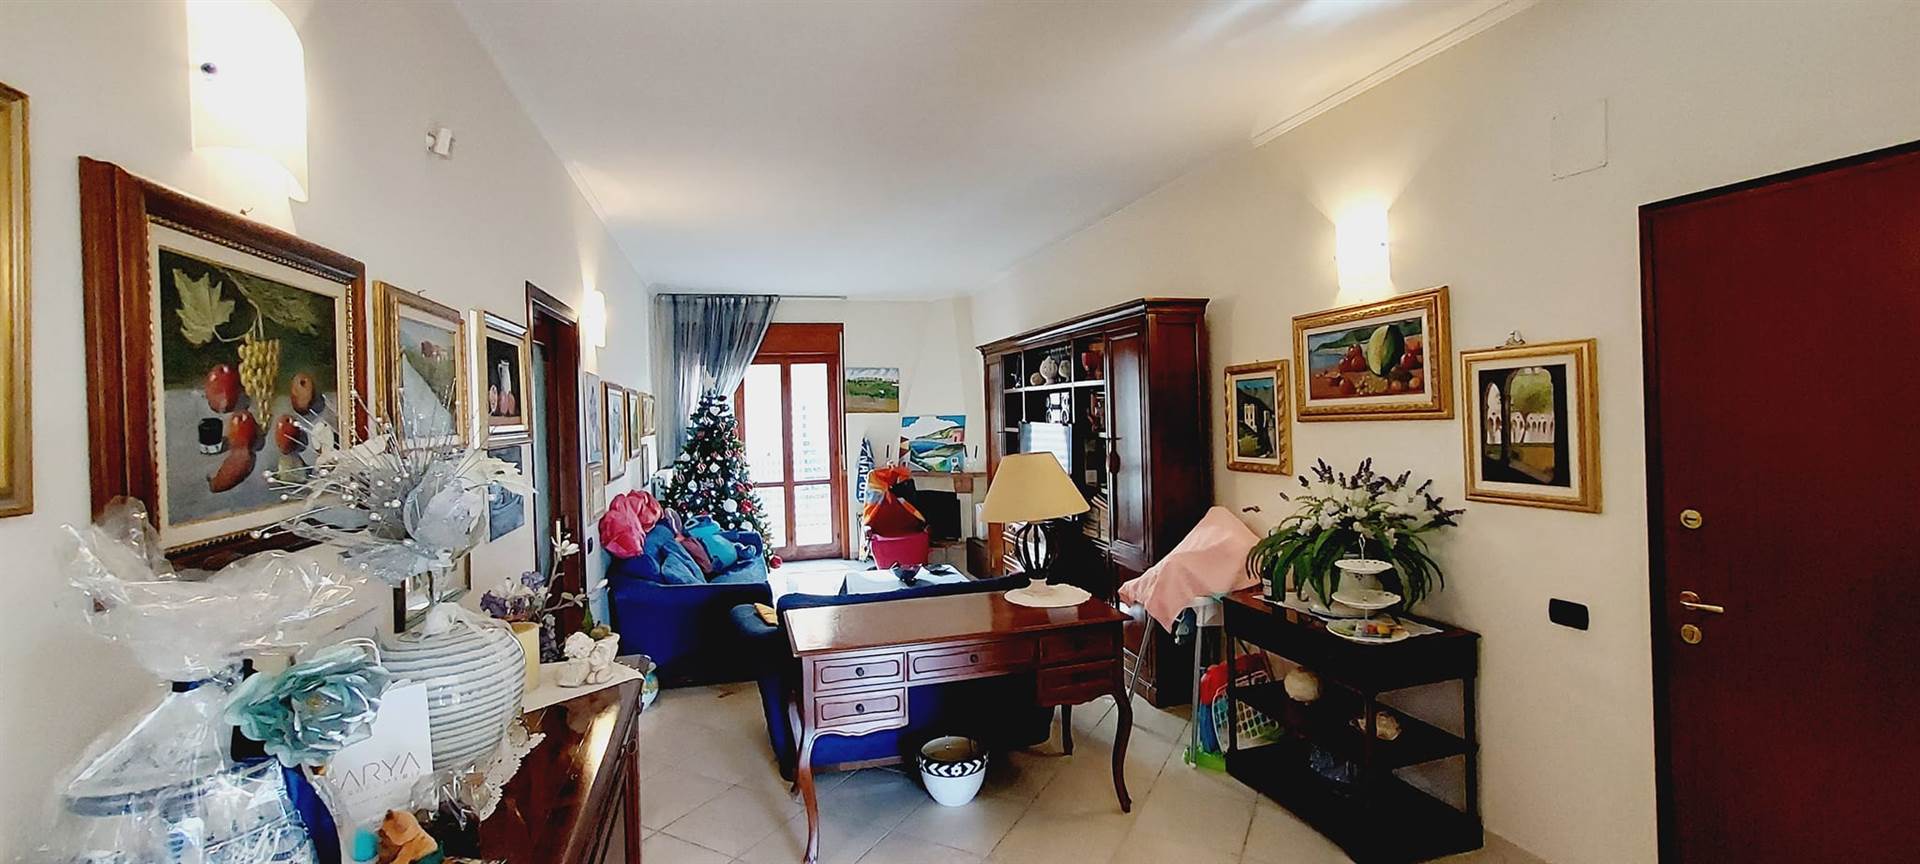 Appartamento in vendita a Cava de' Tirreni, 5 locali, prezzo € 450.000 | PortaleAgenzieImmobiliari.it